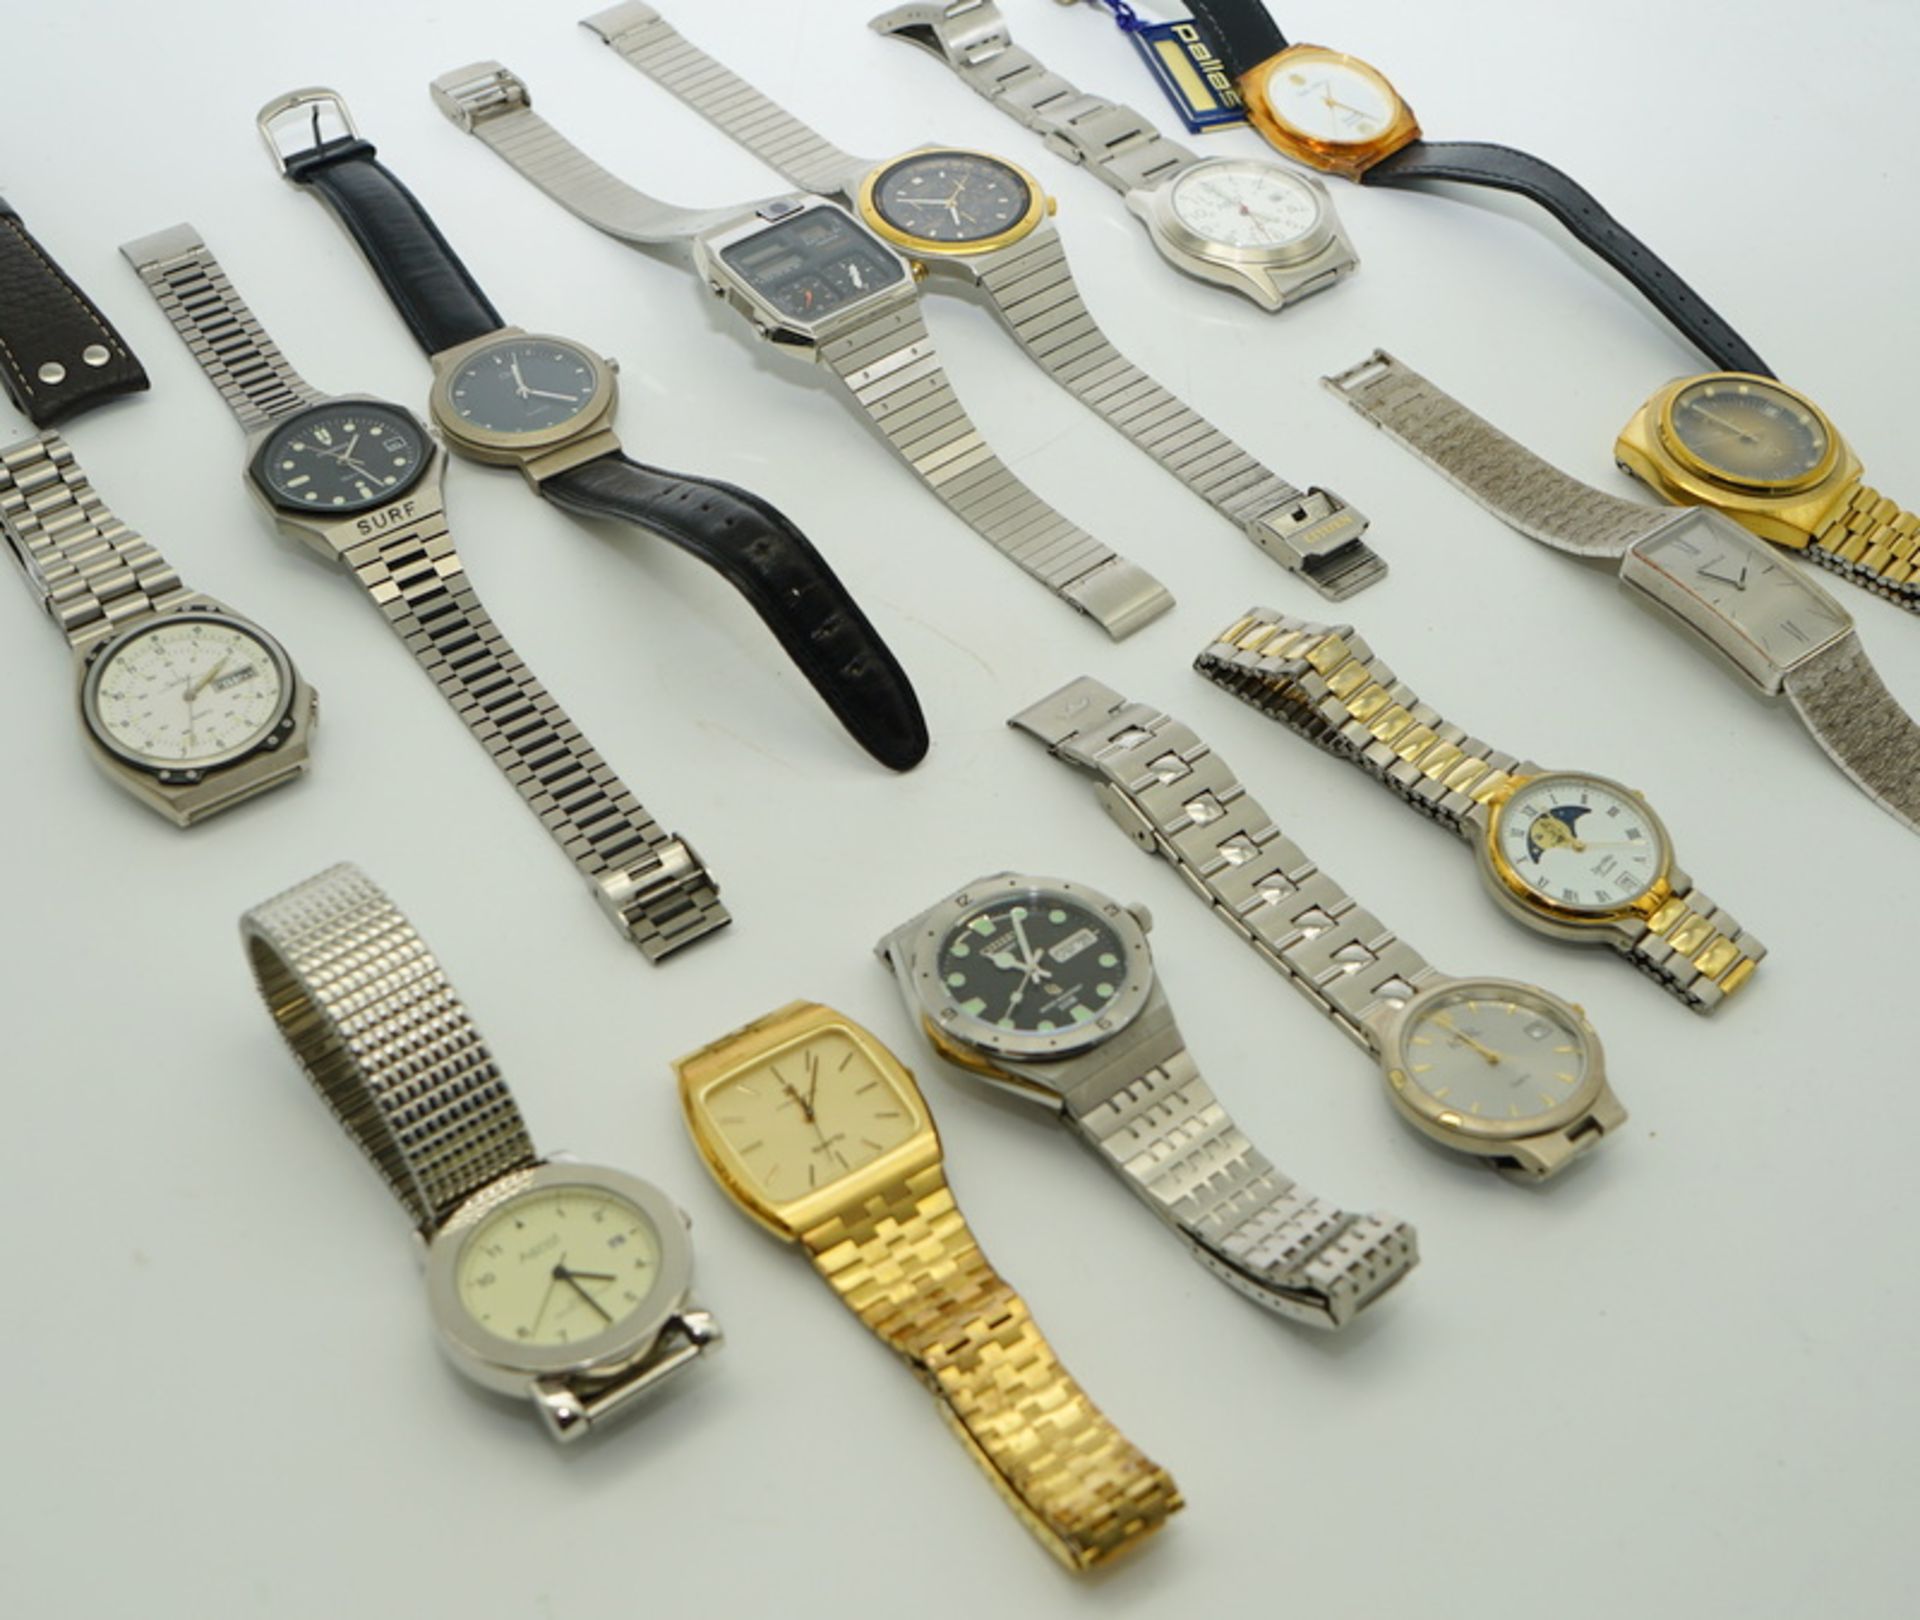 Große Sammlung Uhren, meist Quartz